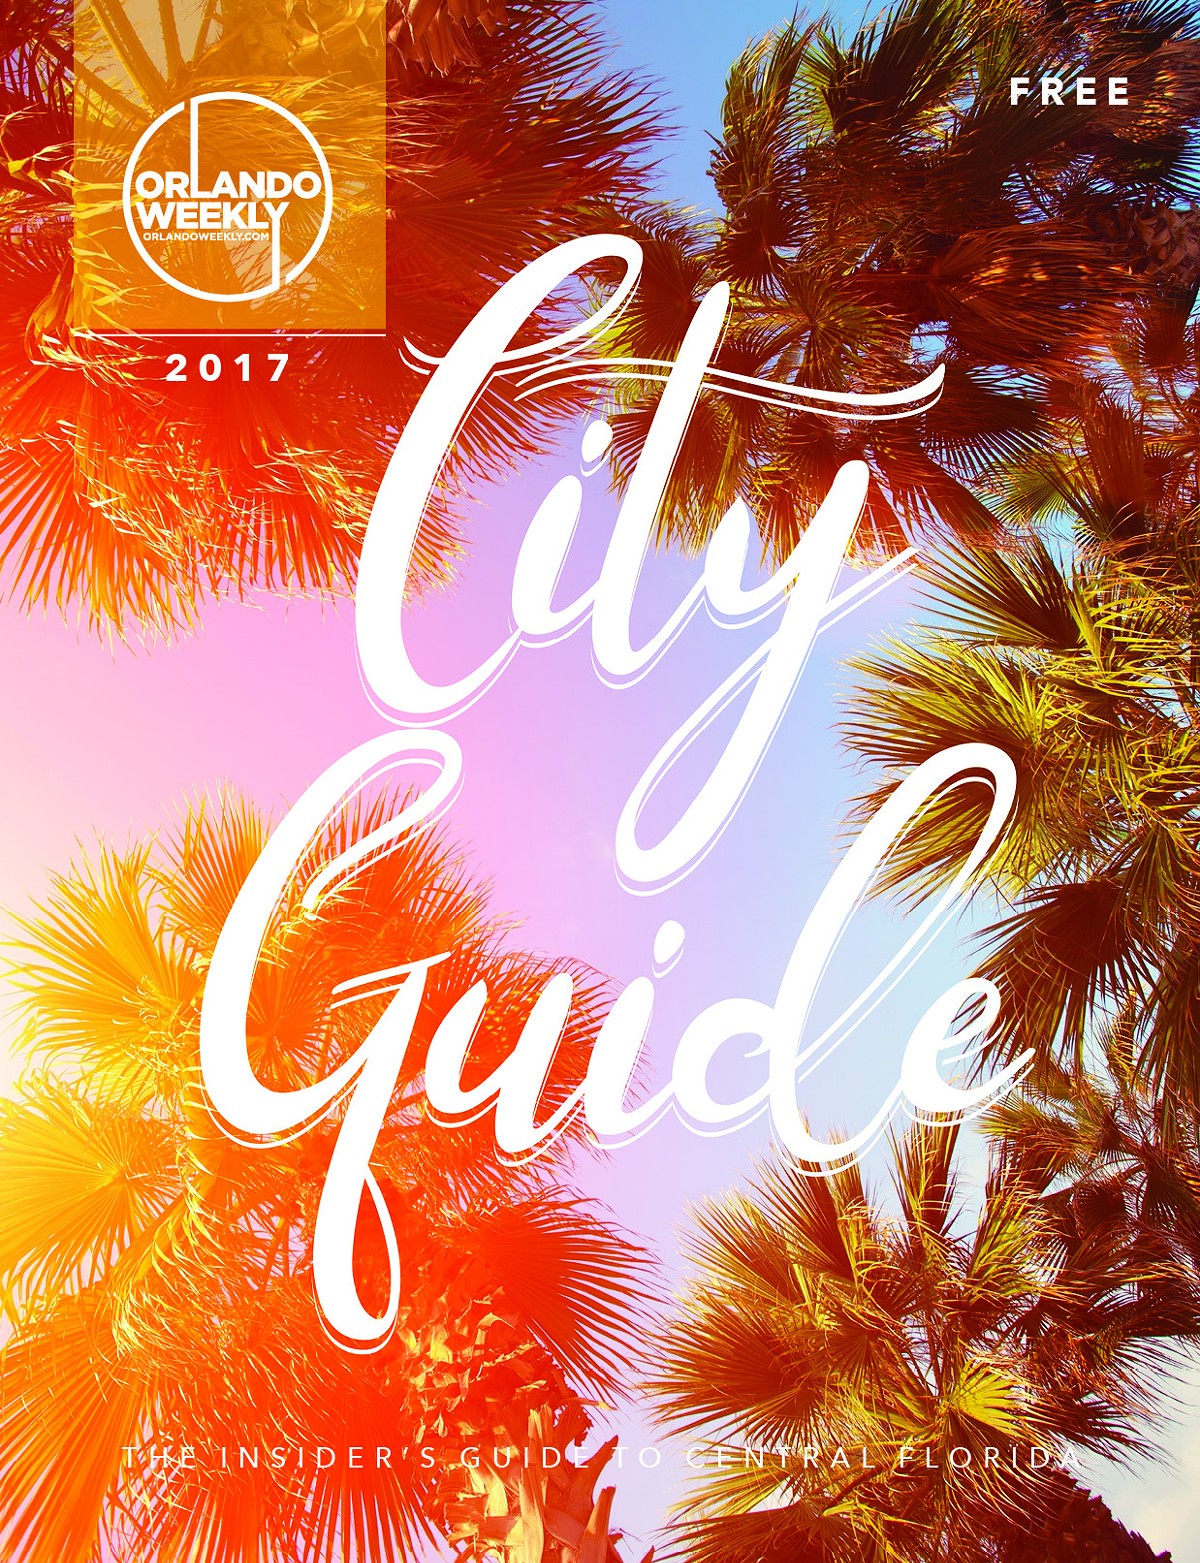 cityguide2017_cover.jpg